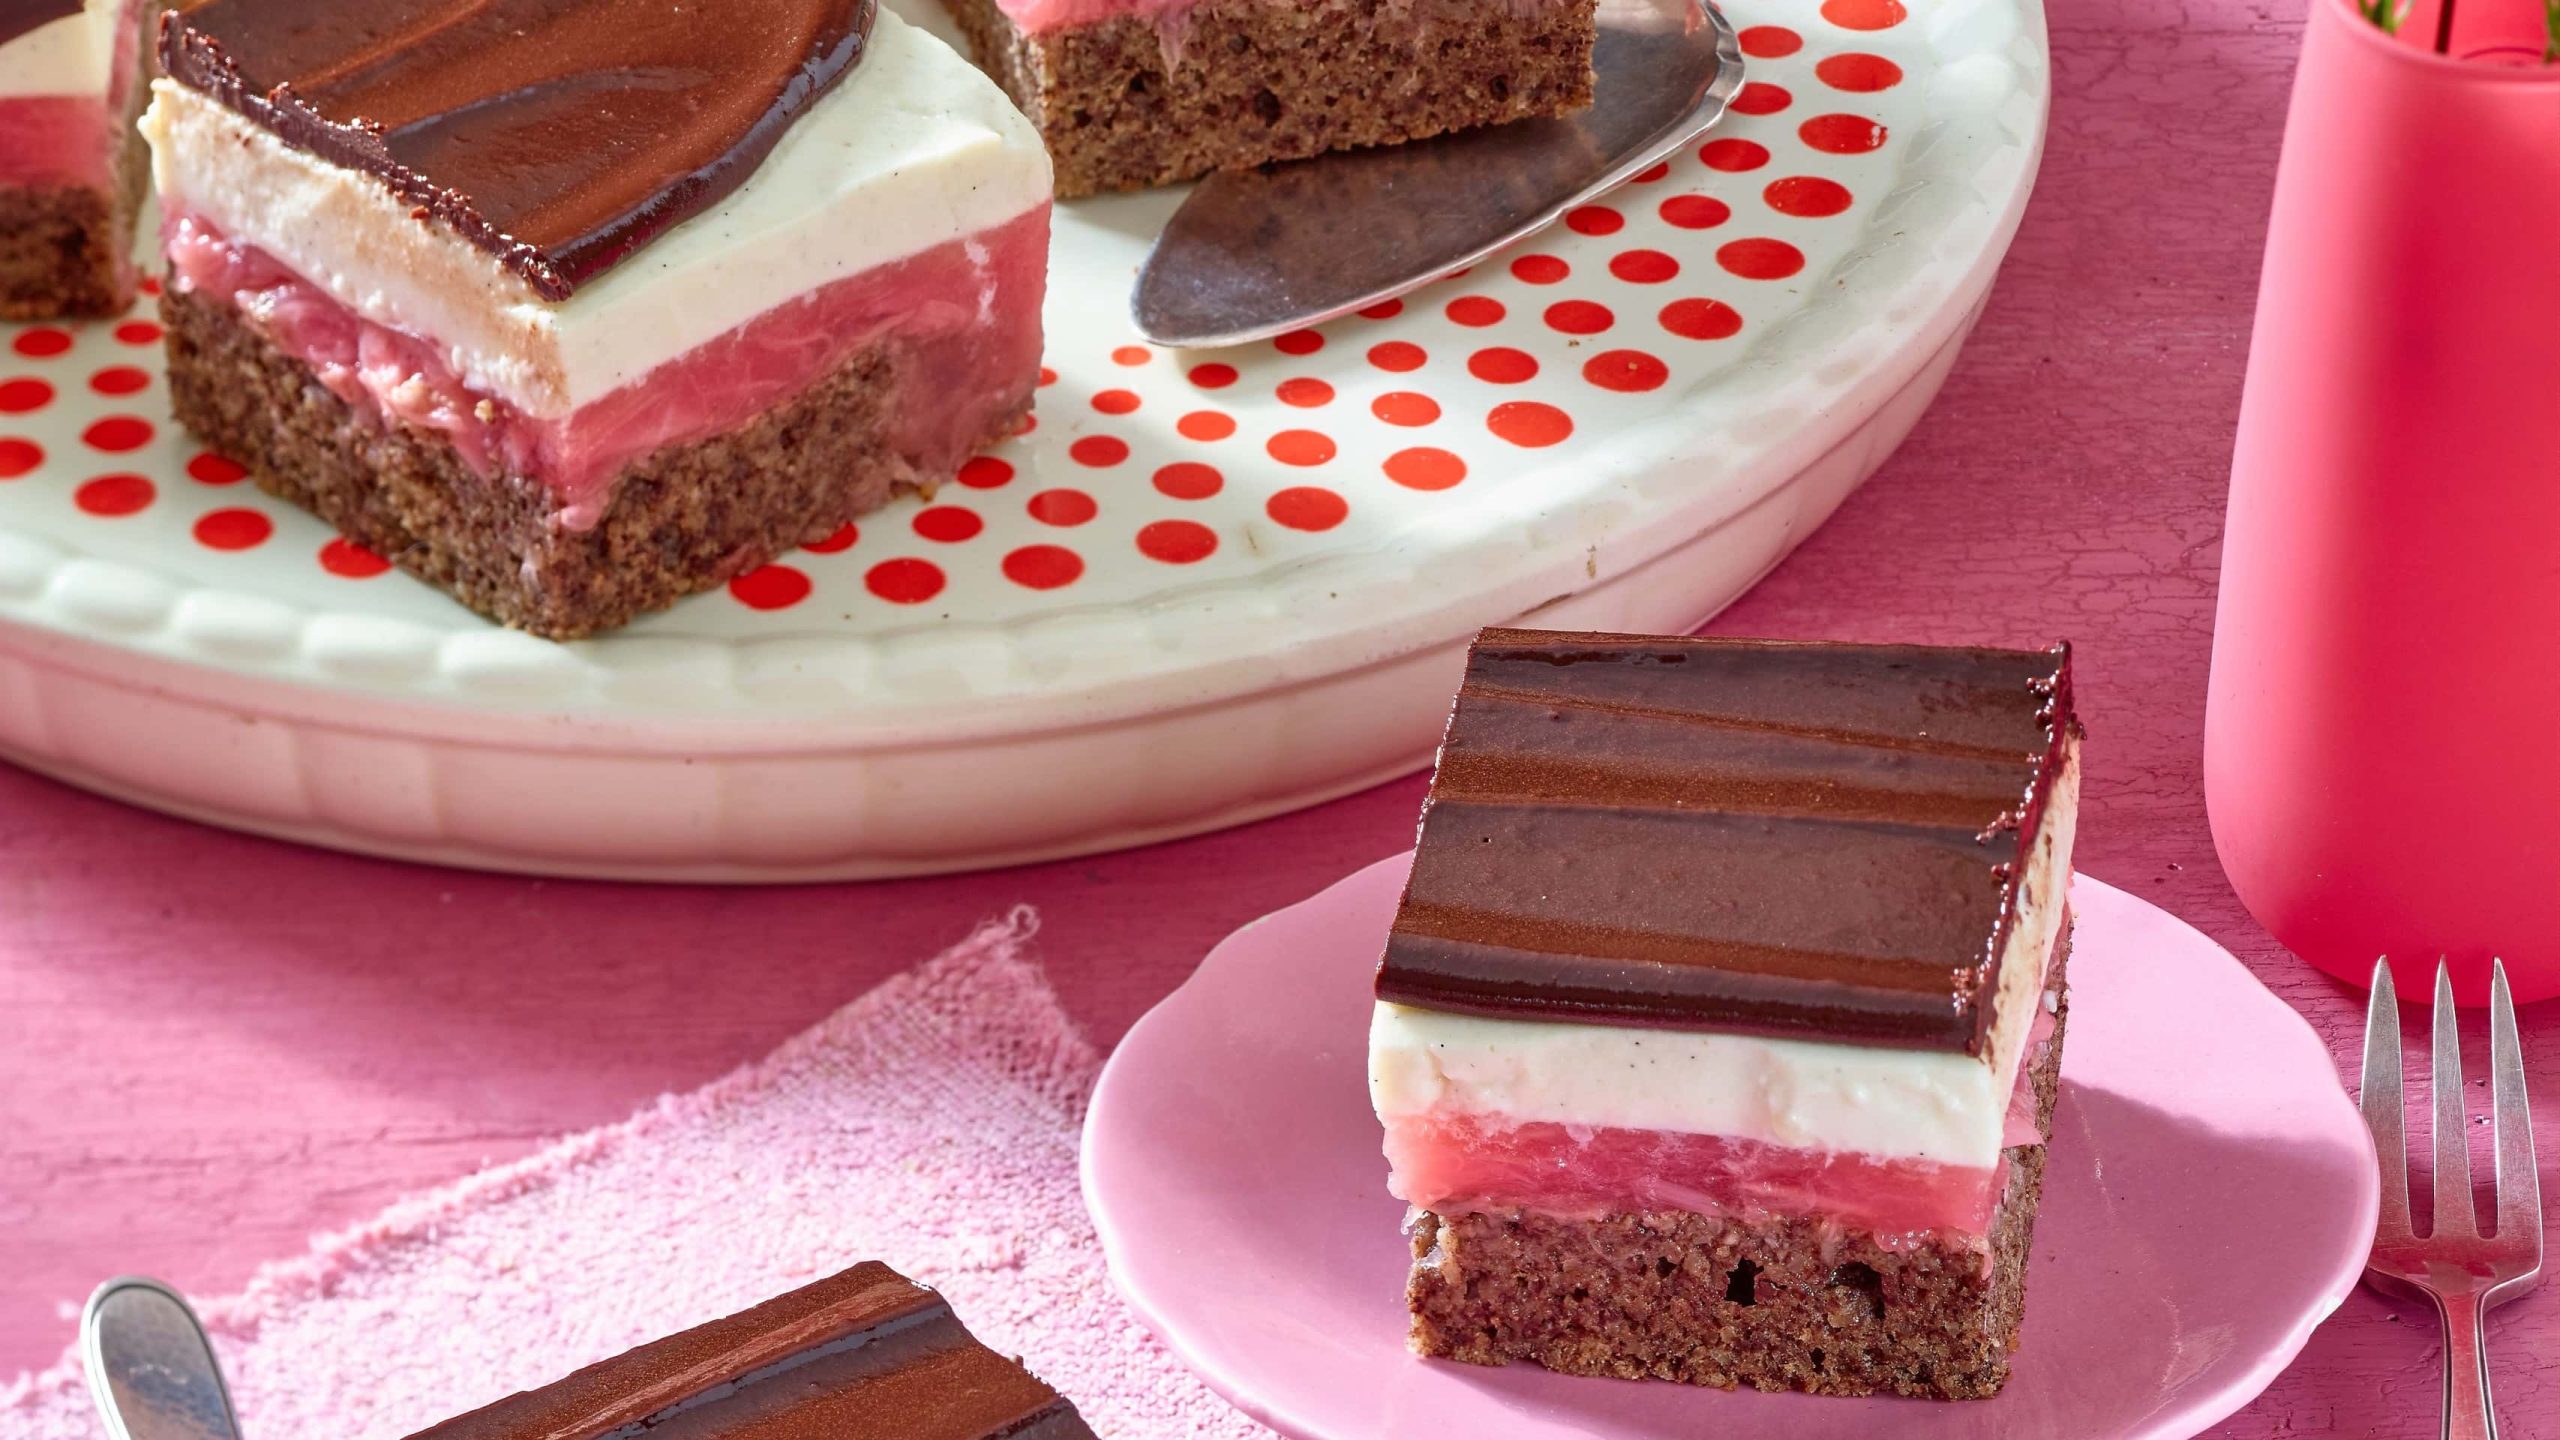 Schokoladige Rhabarberschnitten mit weißer creme auf einem rosa Teller mit einer Gabel auf einem rosa Tisch neben einer Servierplatte mit weiteren Stücken Kuchen.